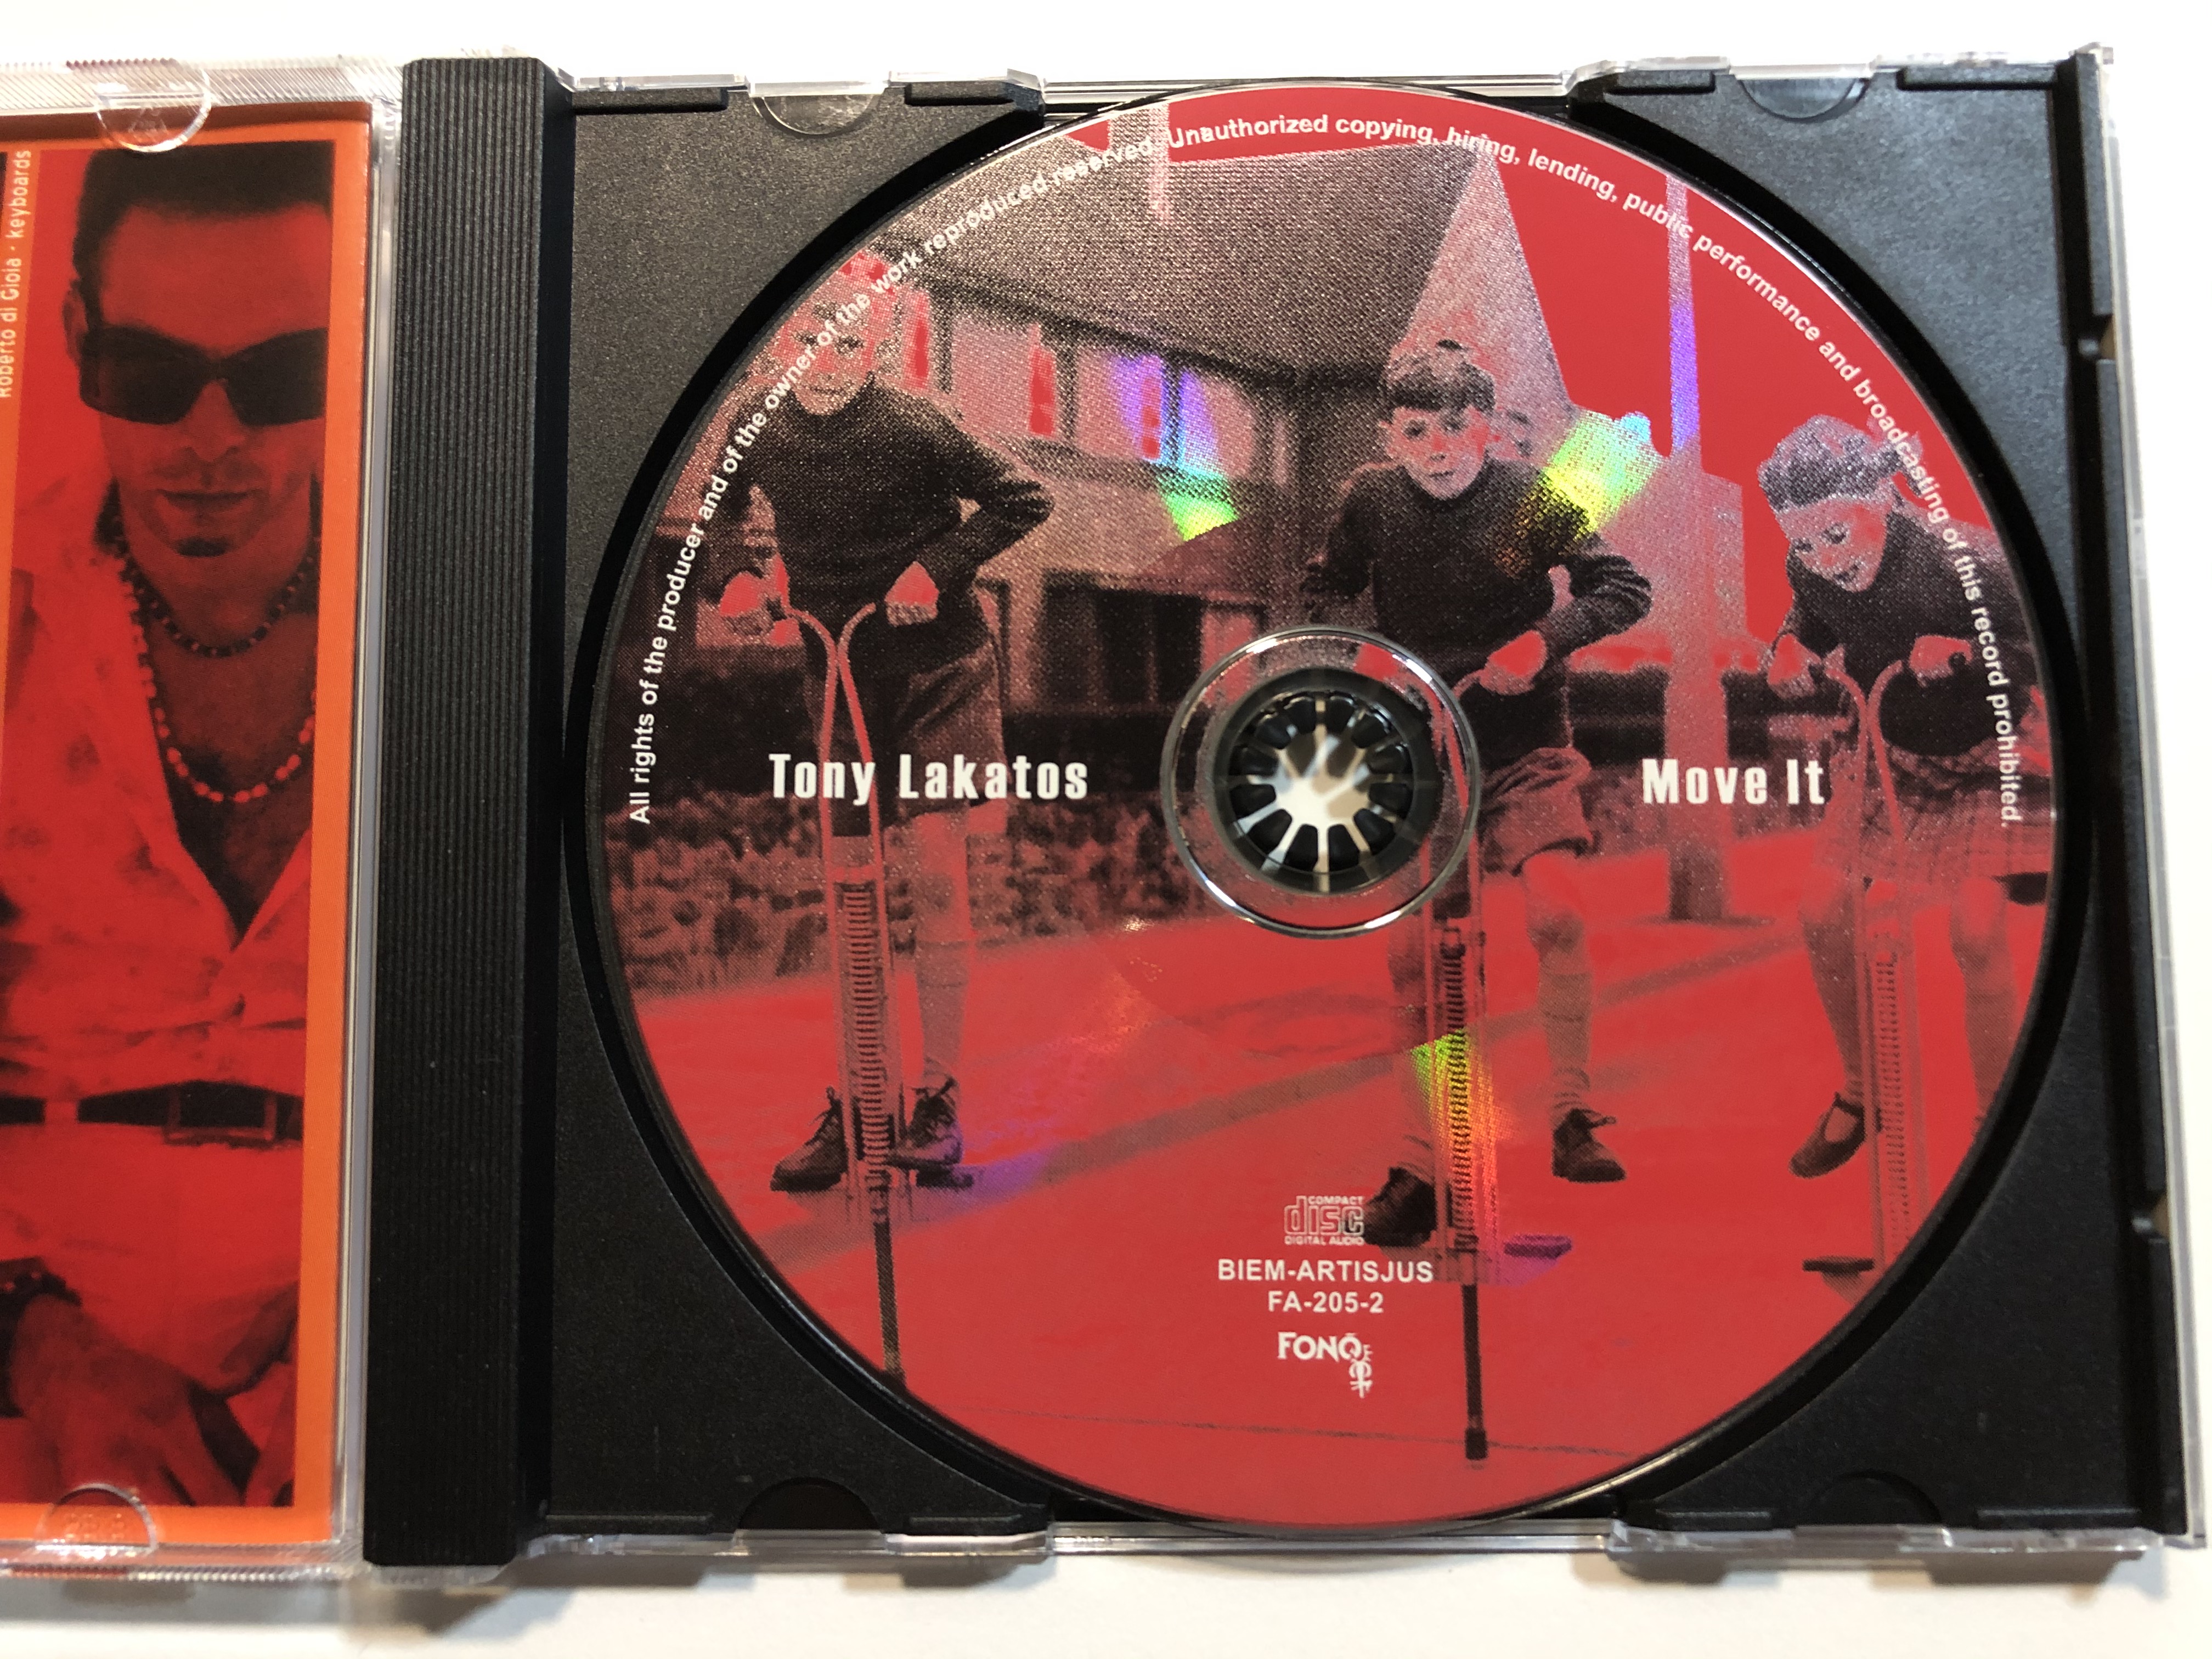 tony-lakatos-move-it-fon-records-audio-cd-2002-fa-205-2-3-.jpg